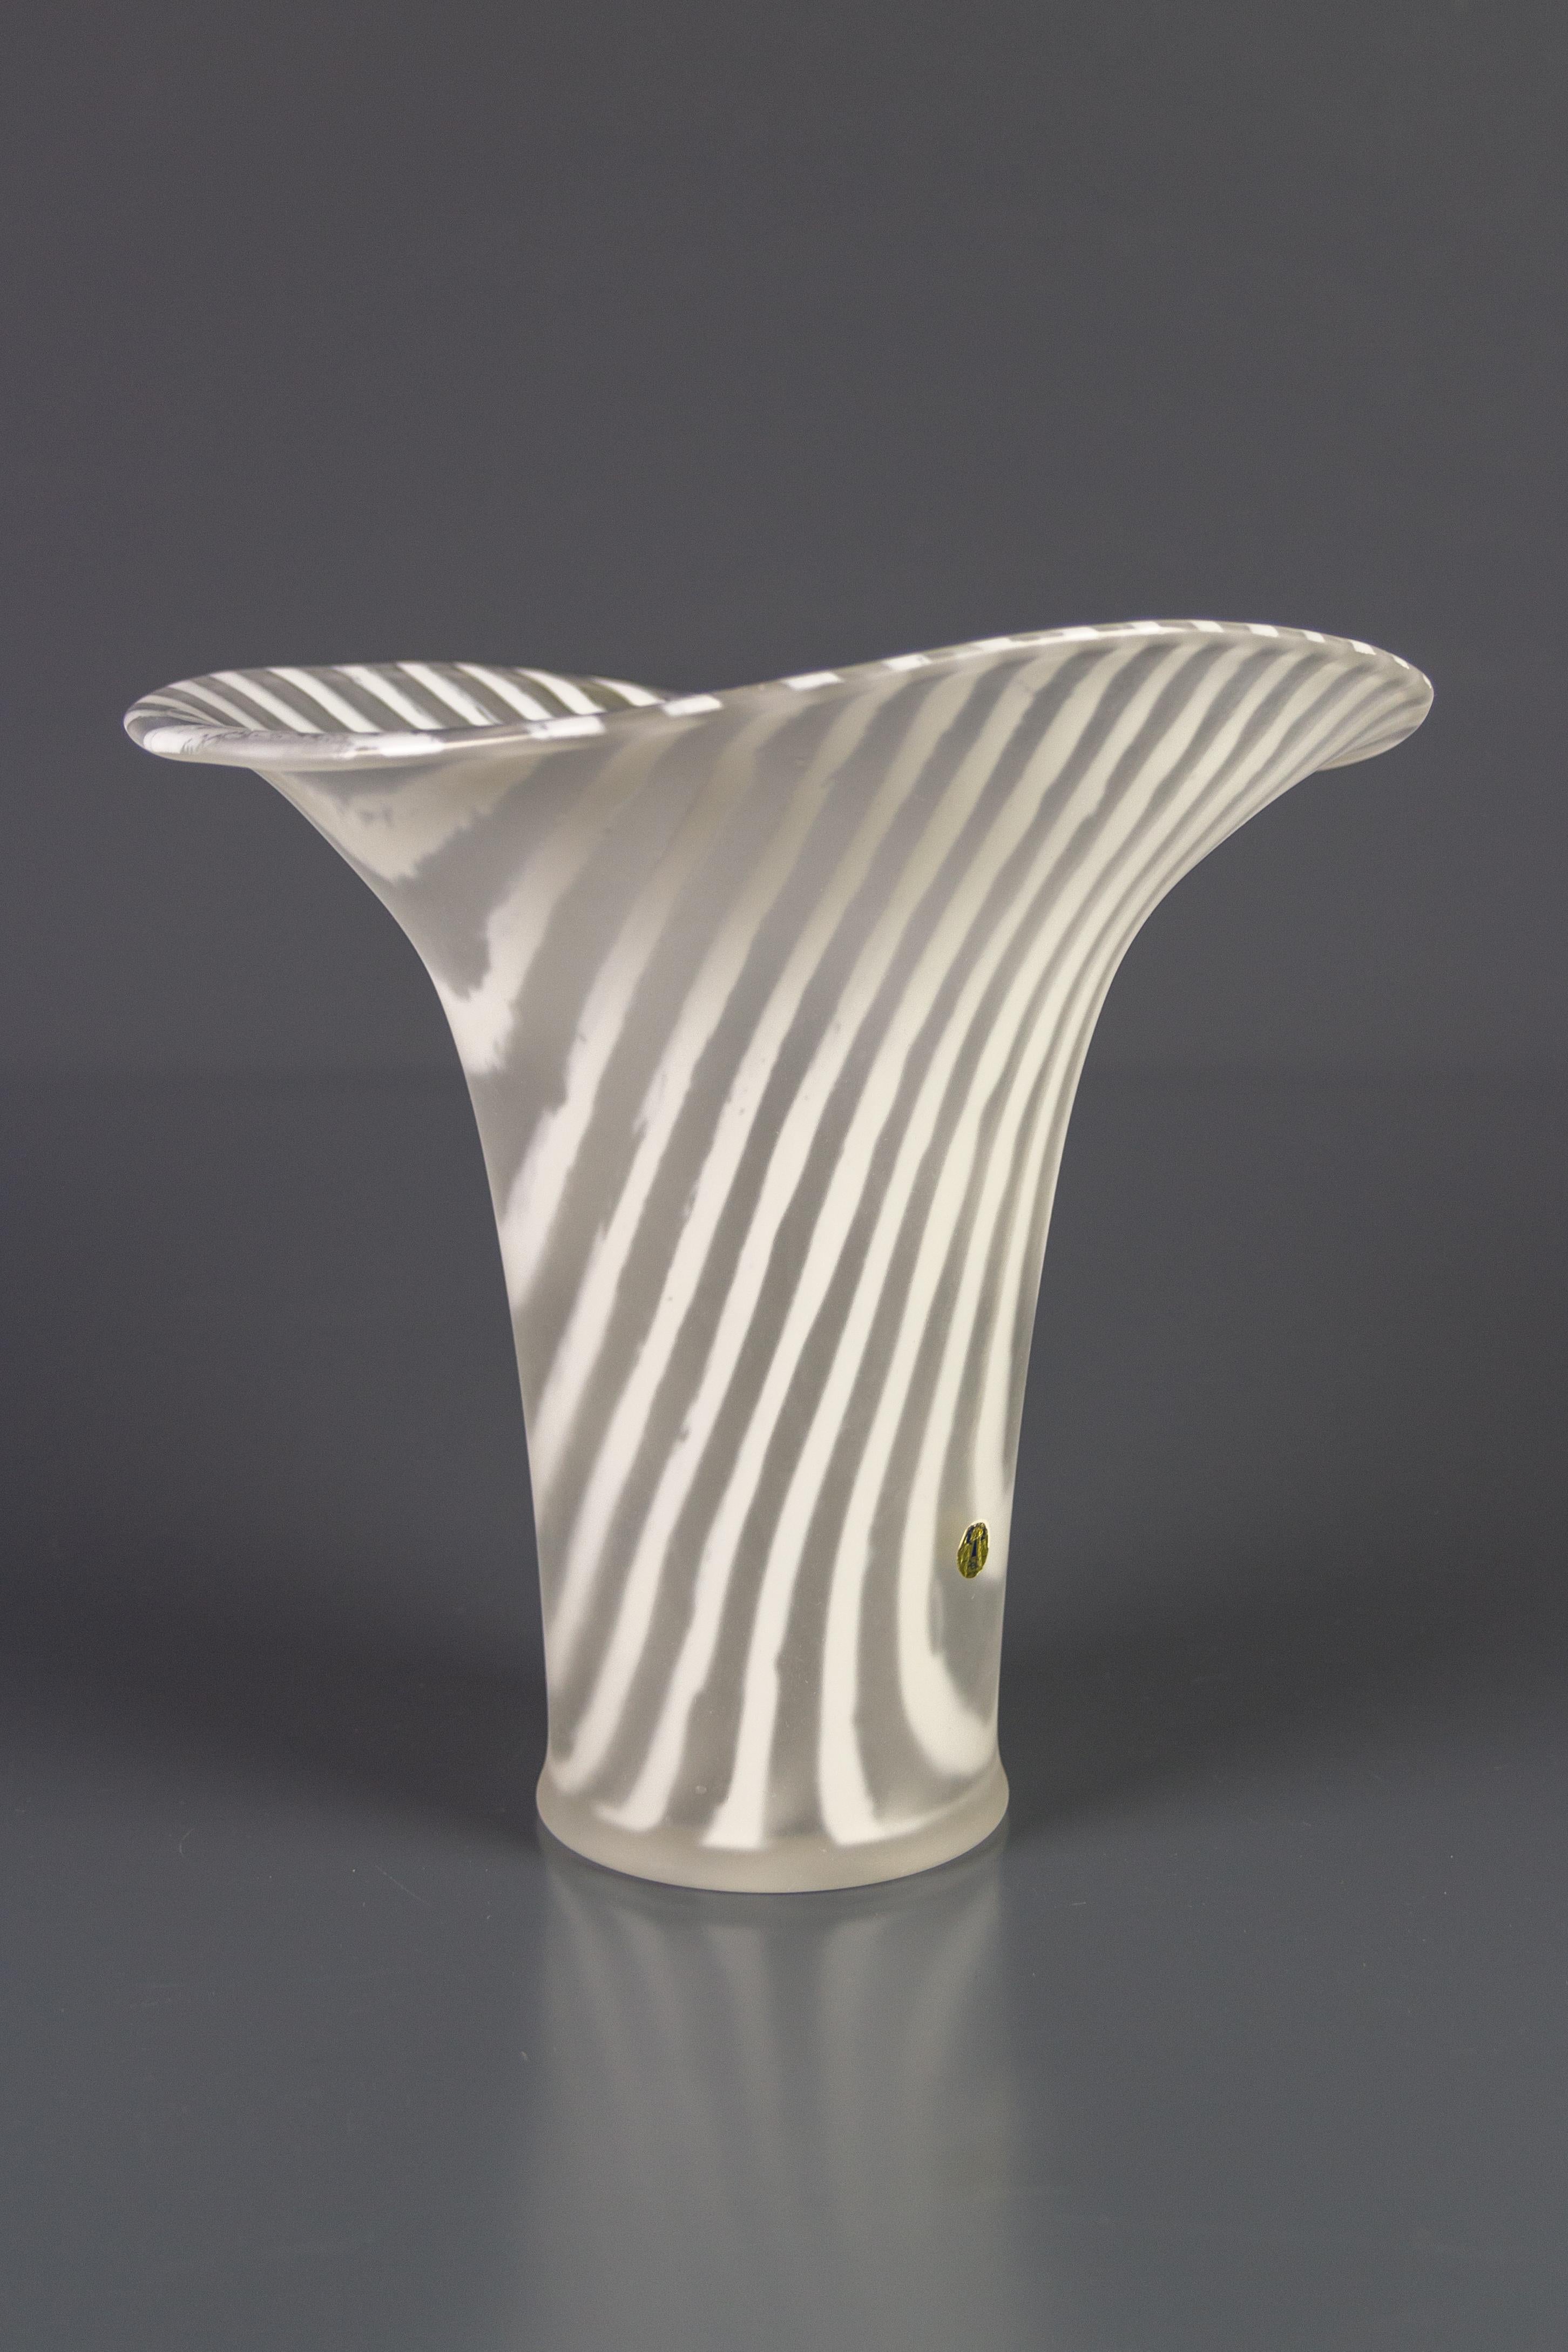 Wunderschön geformte Glasvase mit Zebra Kenia Design von Peill & Putzler, Deutschland, 1970er Jahre. Die fein mattierte Außenseite steht in schönem Kontrast zu dem glänzenden Glas der Innenseite.
Abmessungen: Höhe: 26 cm / 10.23 in; Durchmesser: 28